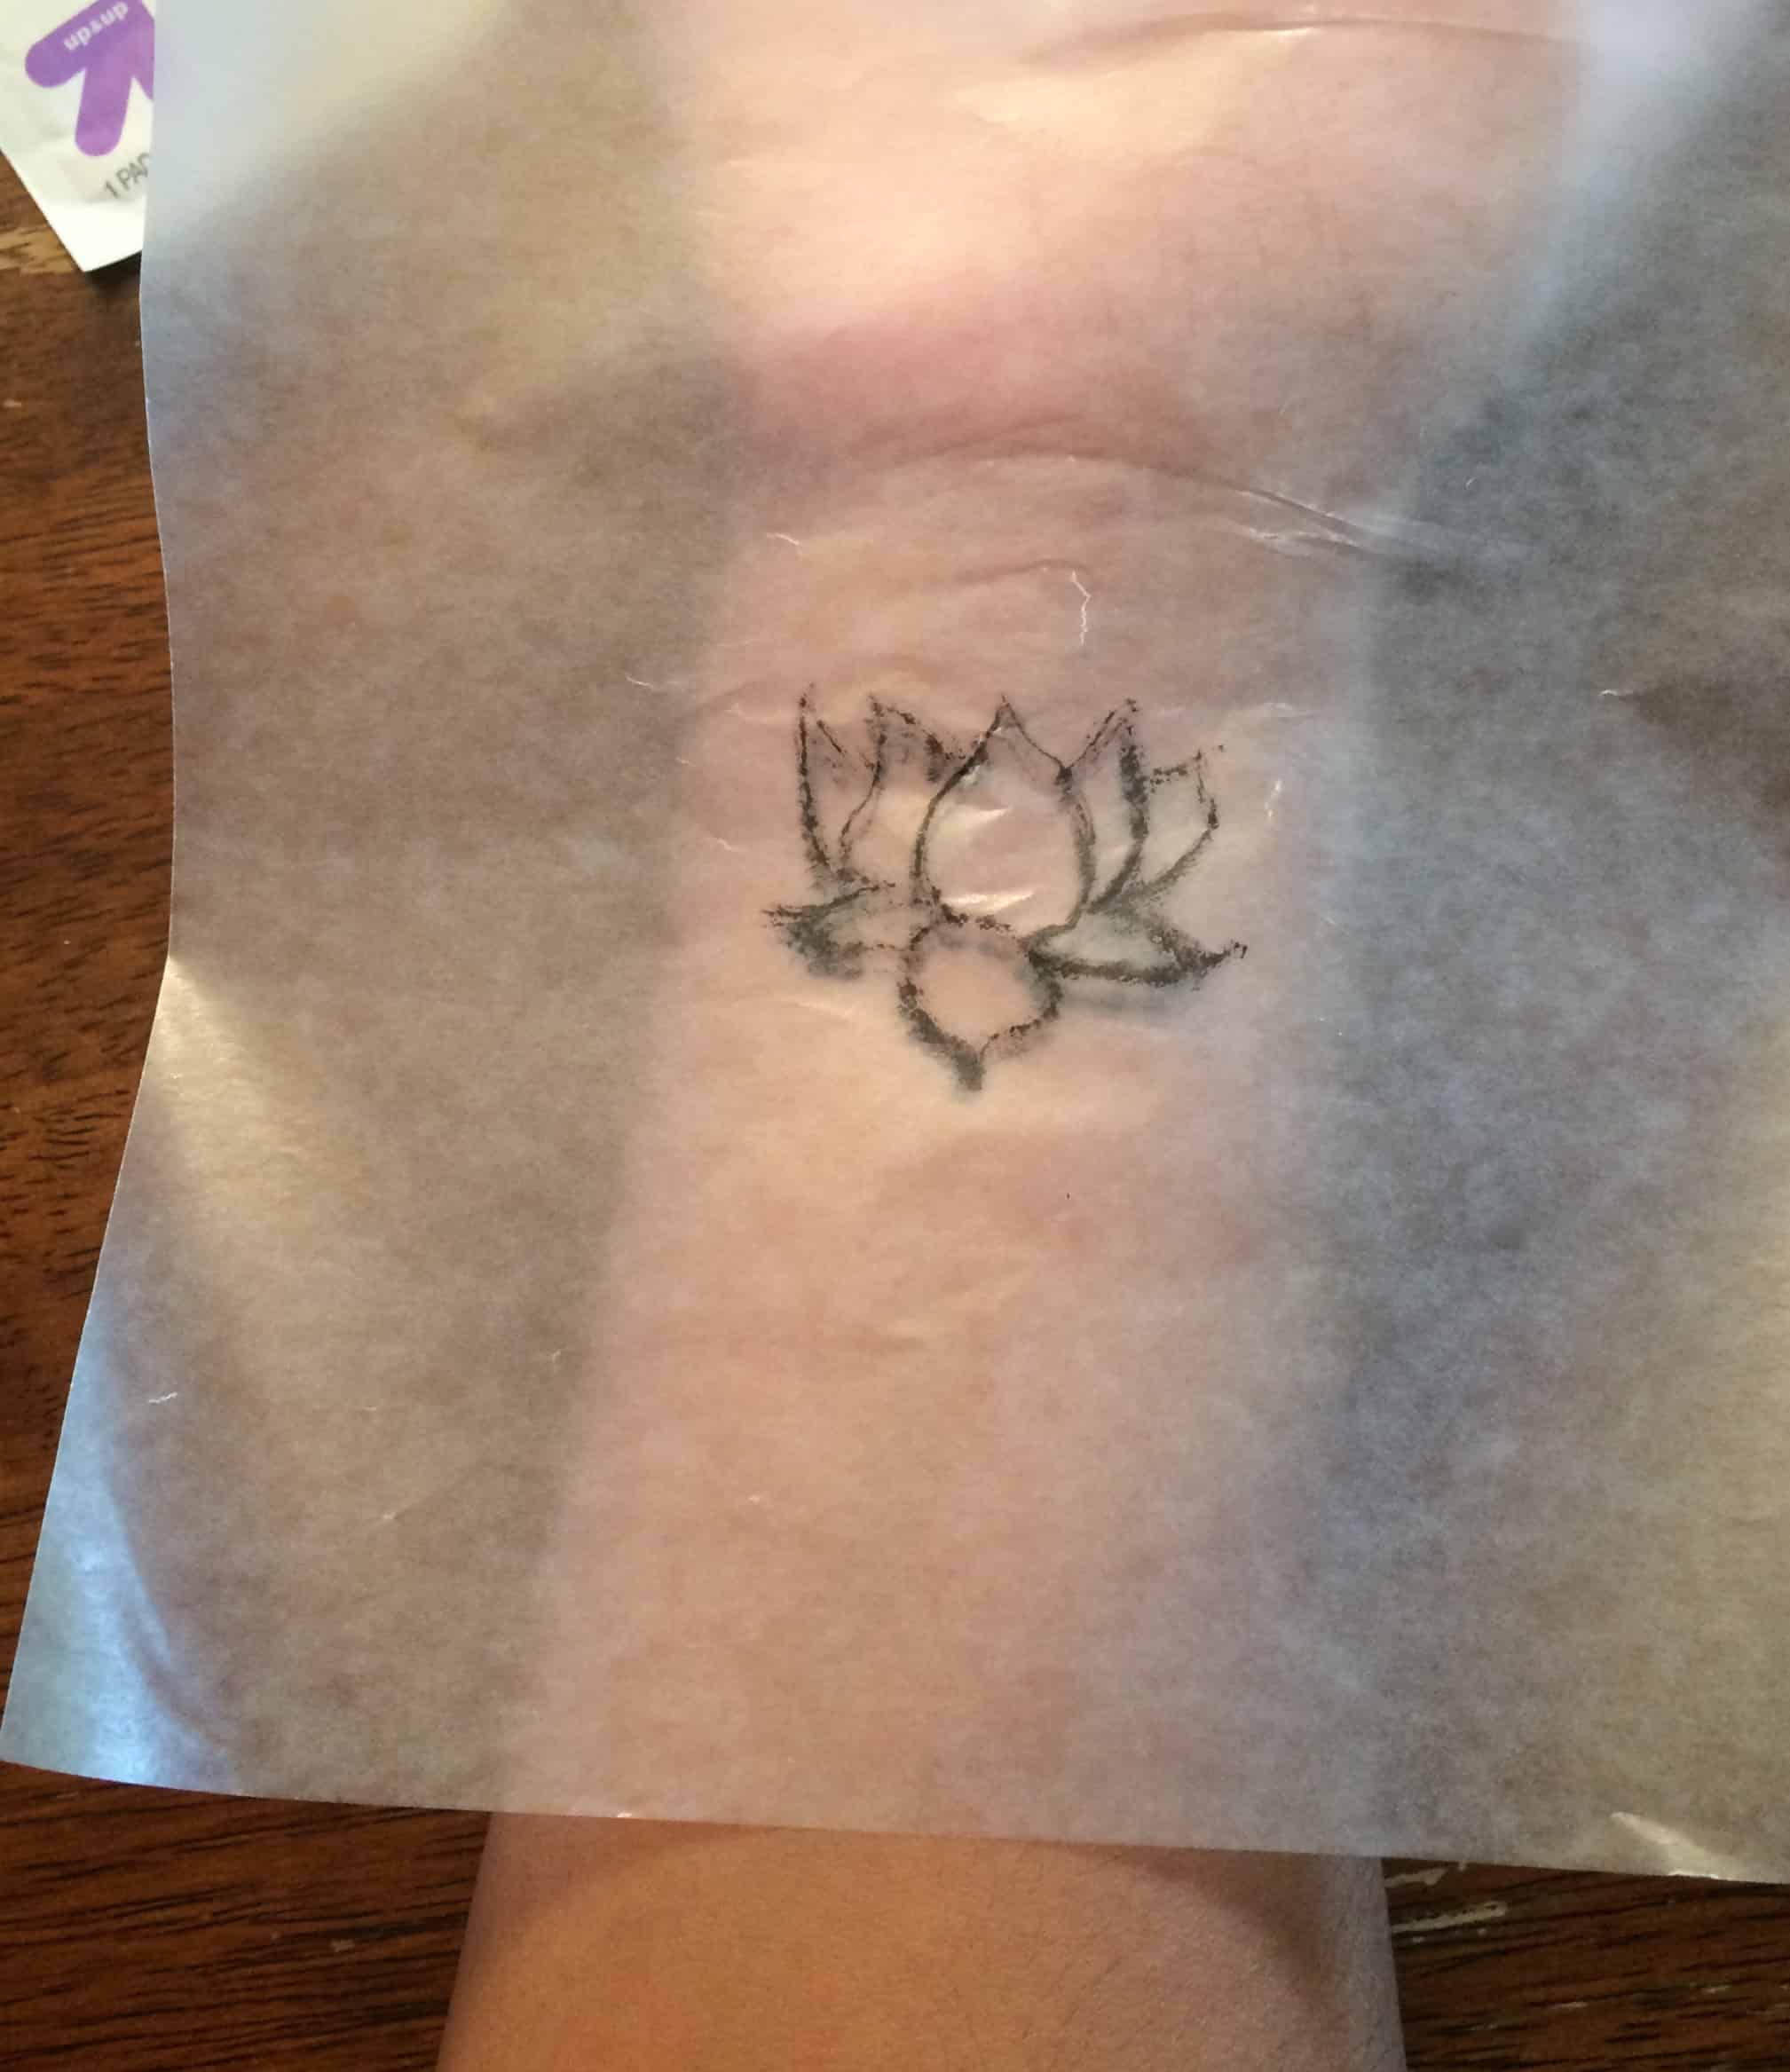 DIY Temporary Tattoos: How to Make a Temporary Tattoo